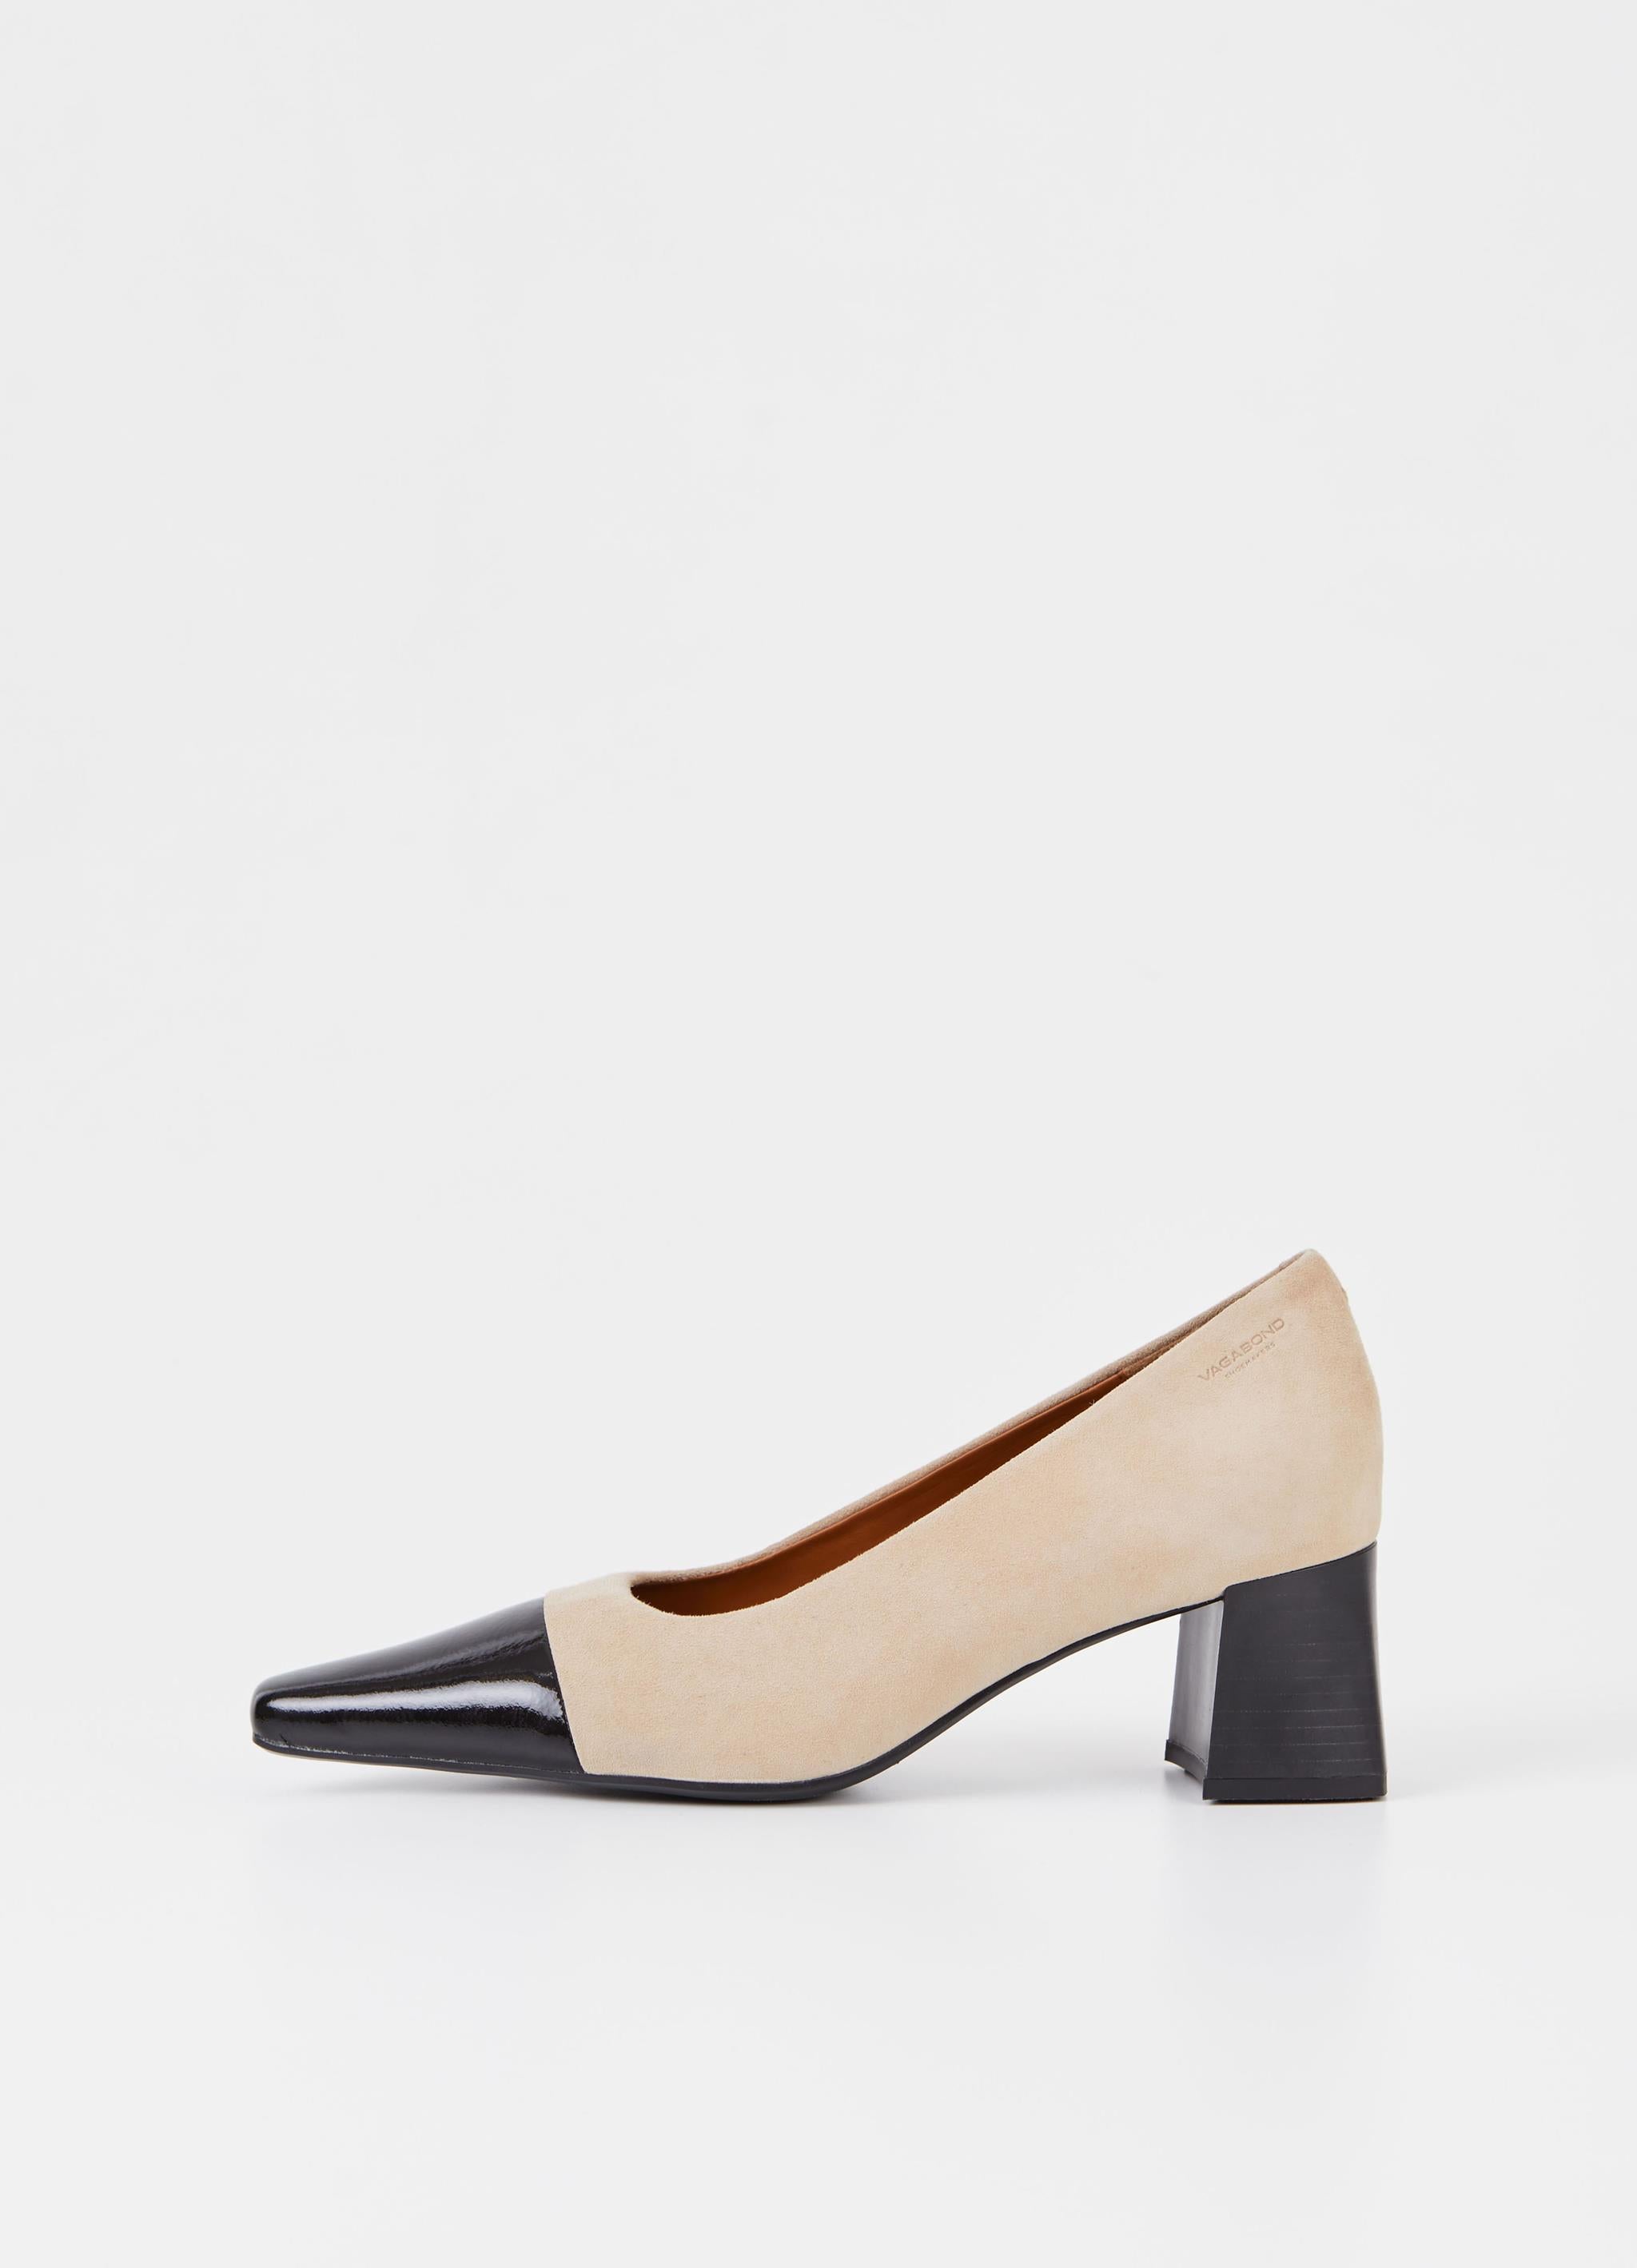 ALTEA heels